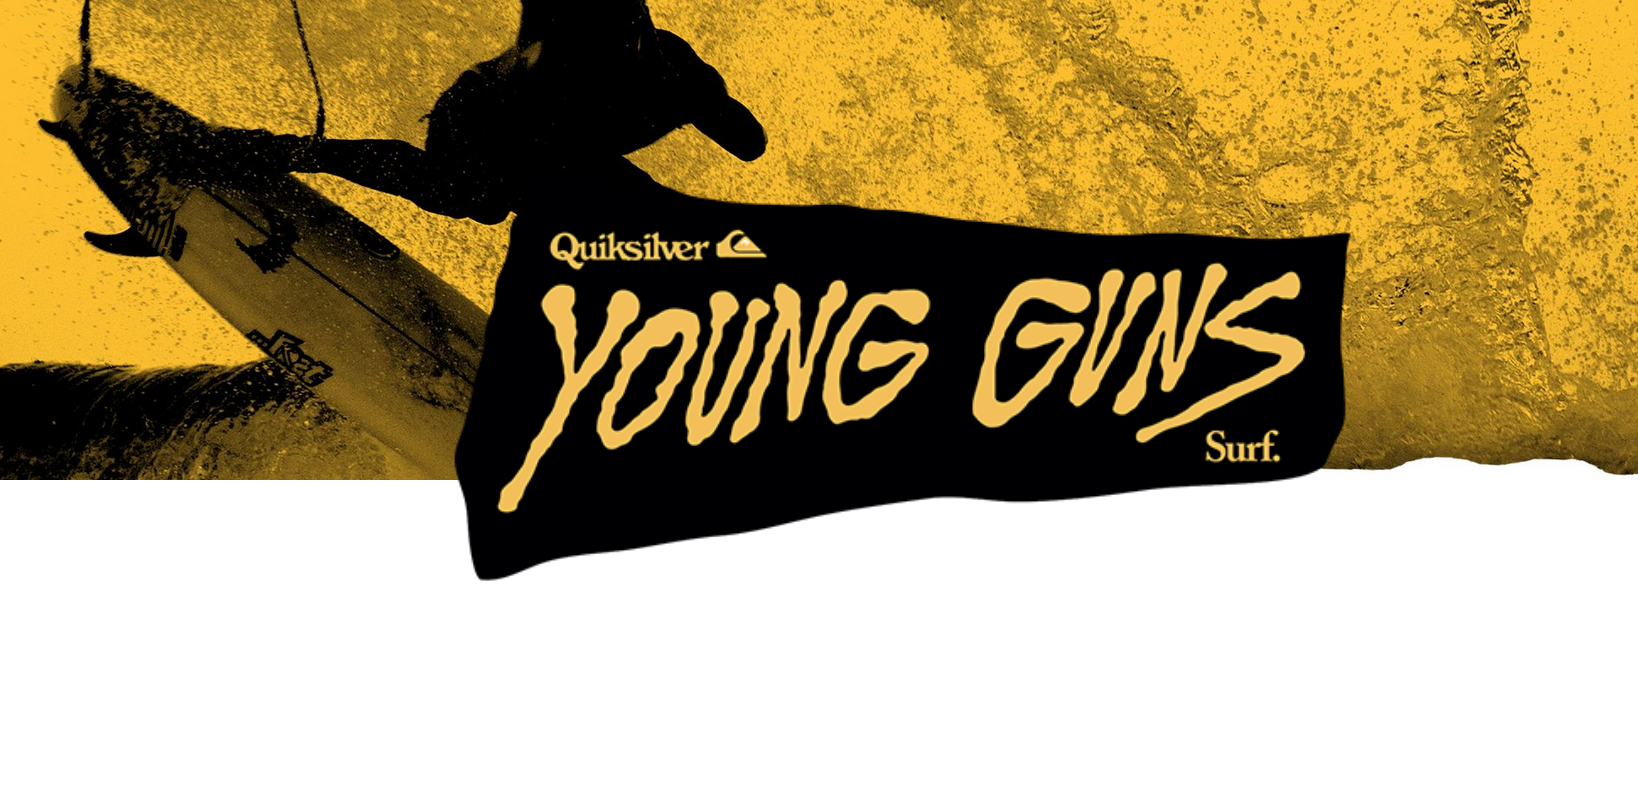 Quiksilver Young Guns 2019